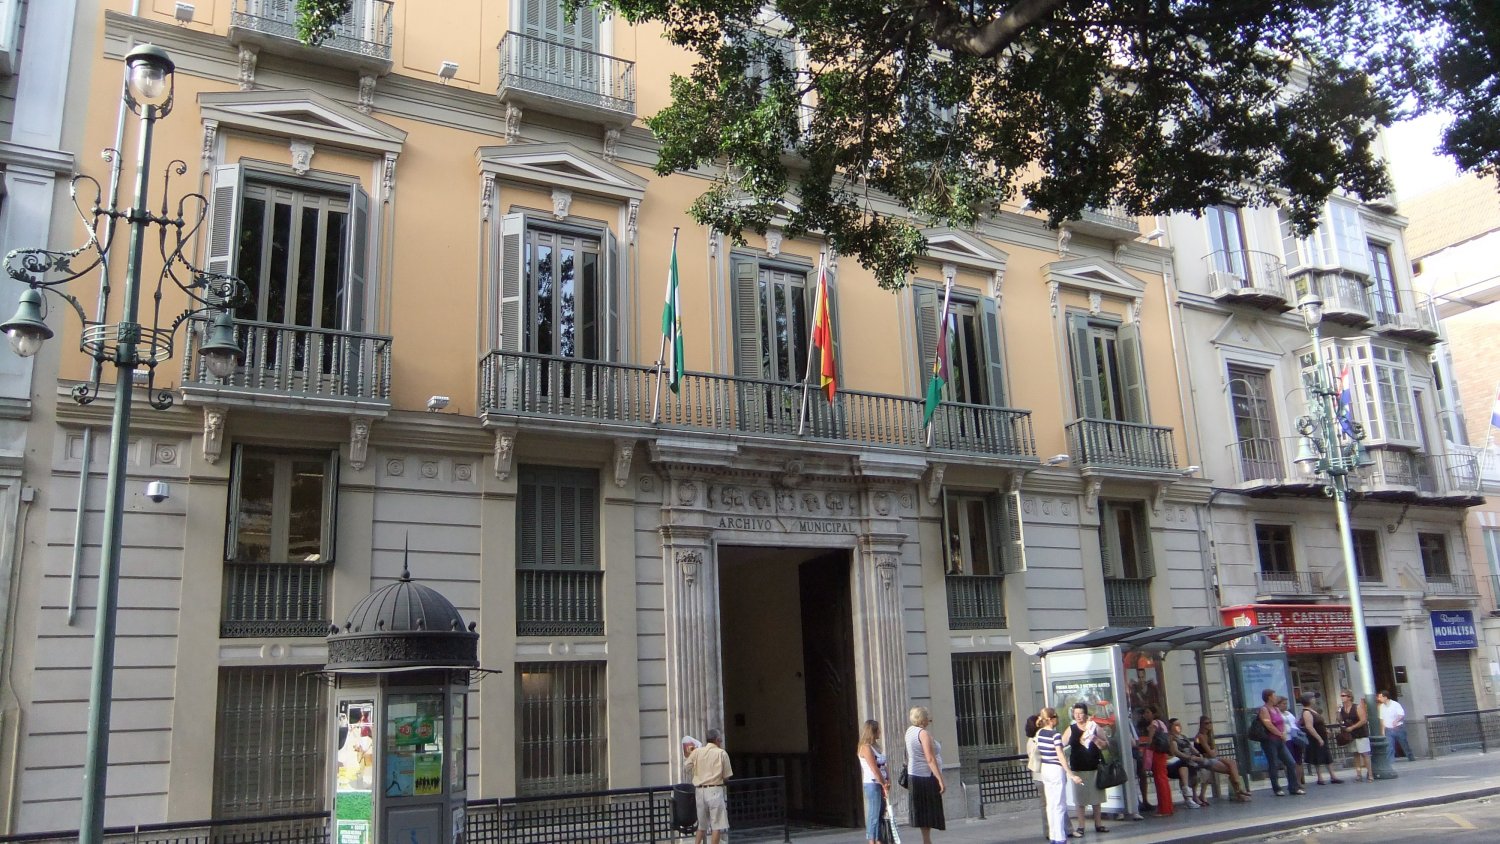 El Archivo Municipal de Málaga inaugura un Belén elaborado con piezas de porcelana fría confeccionadas a mano